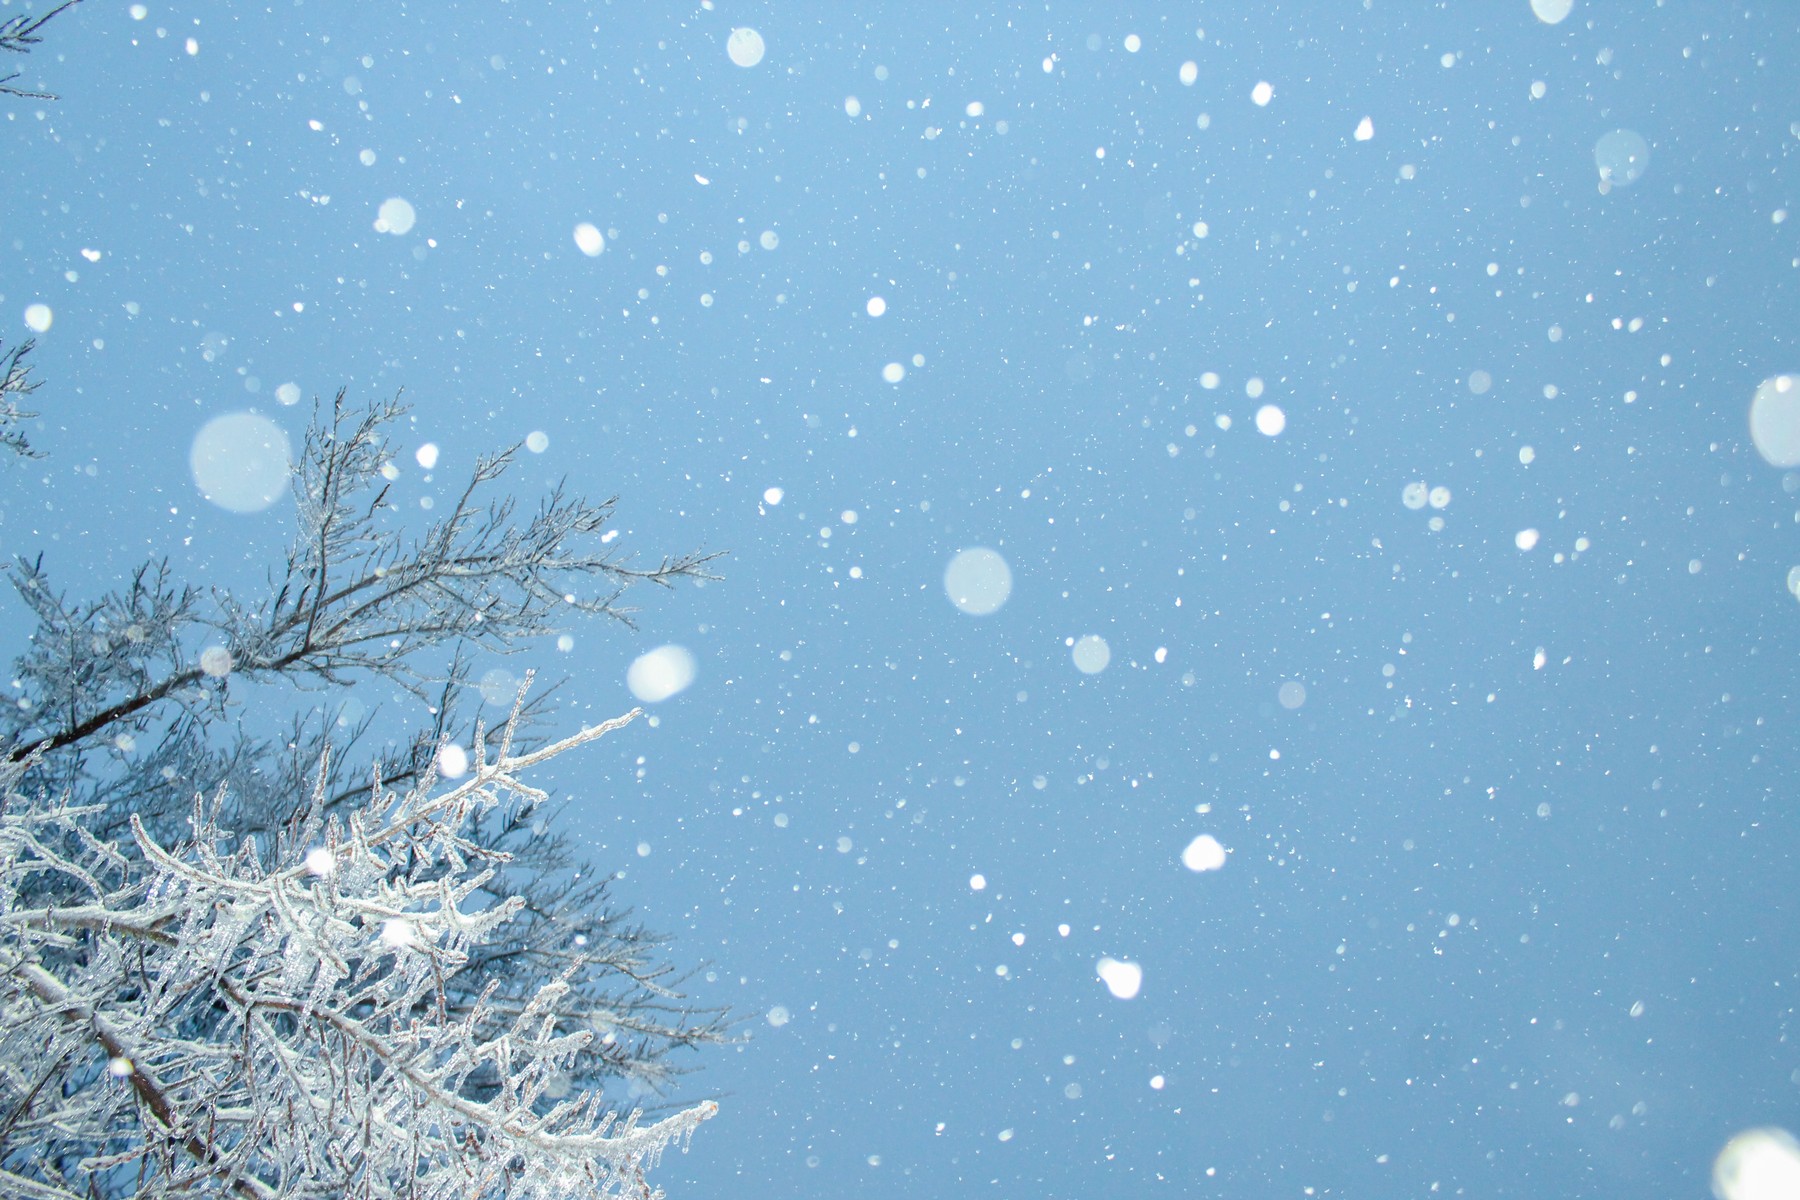 Snow Fall Warning | Chandler Cruttenden